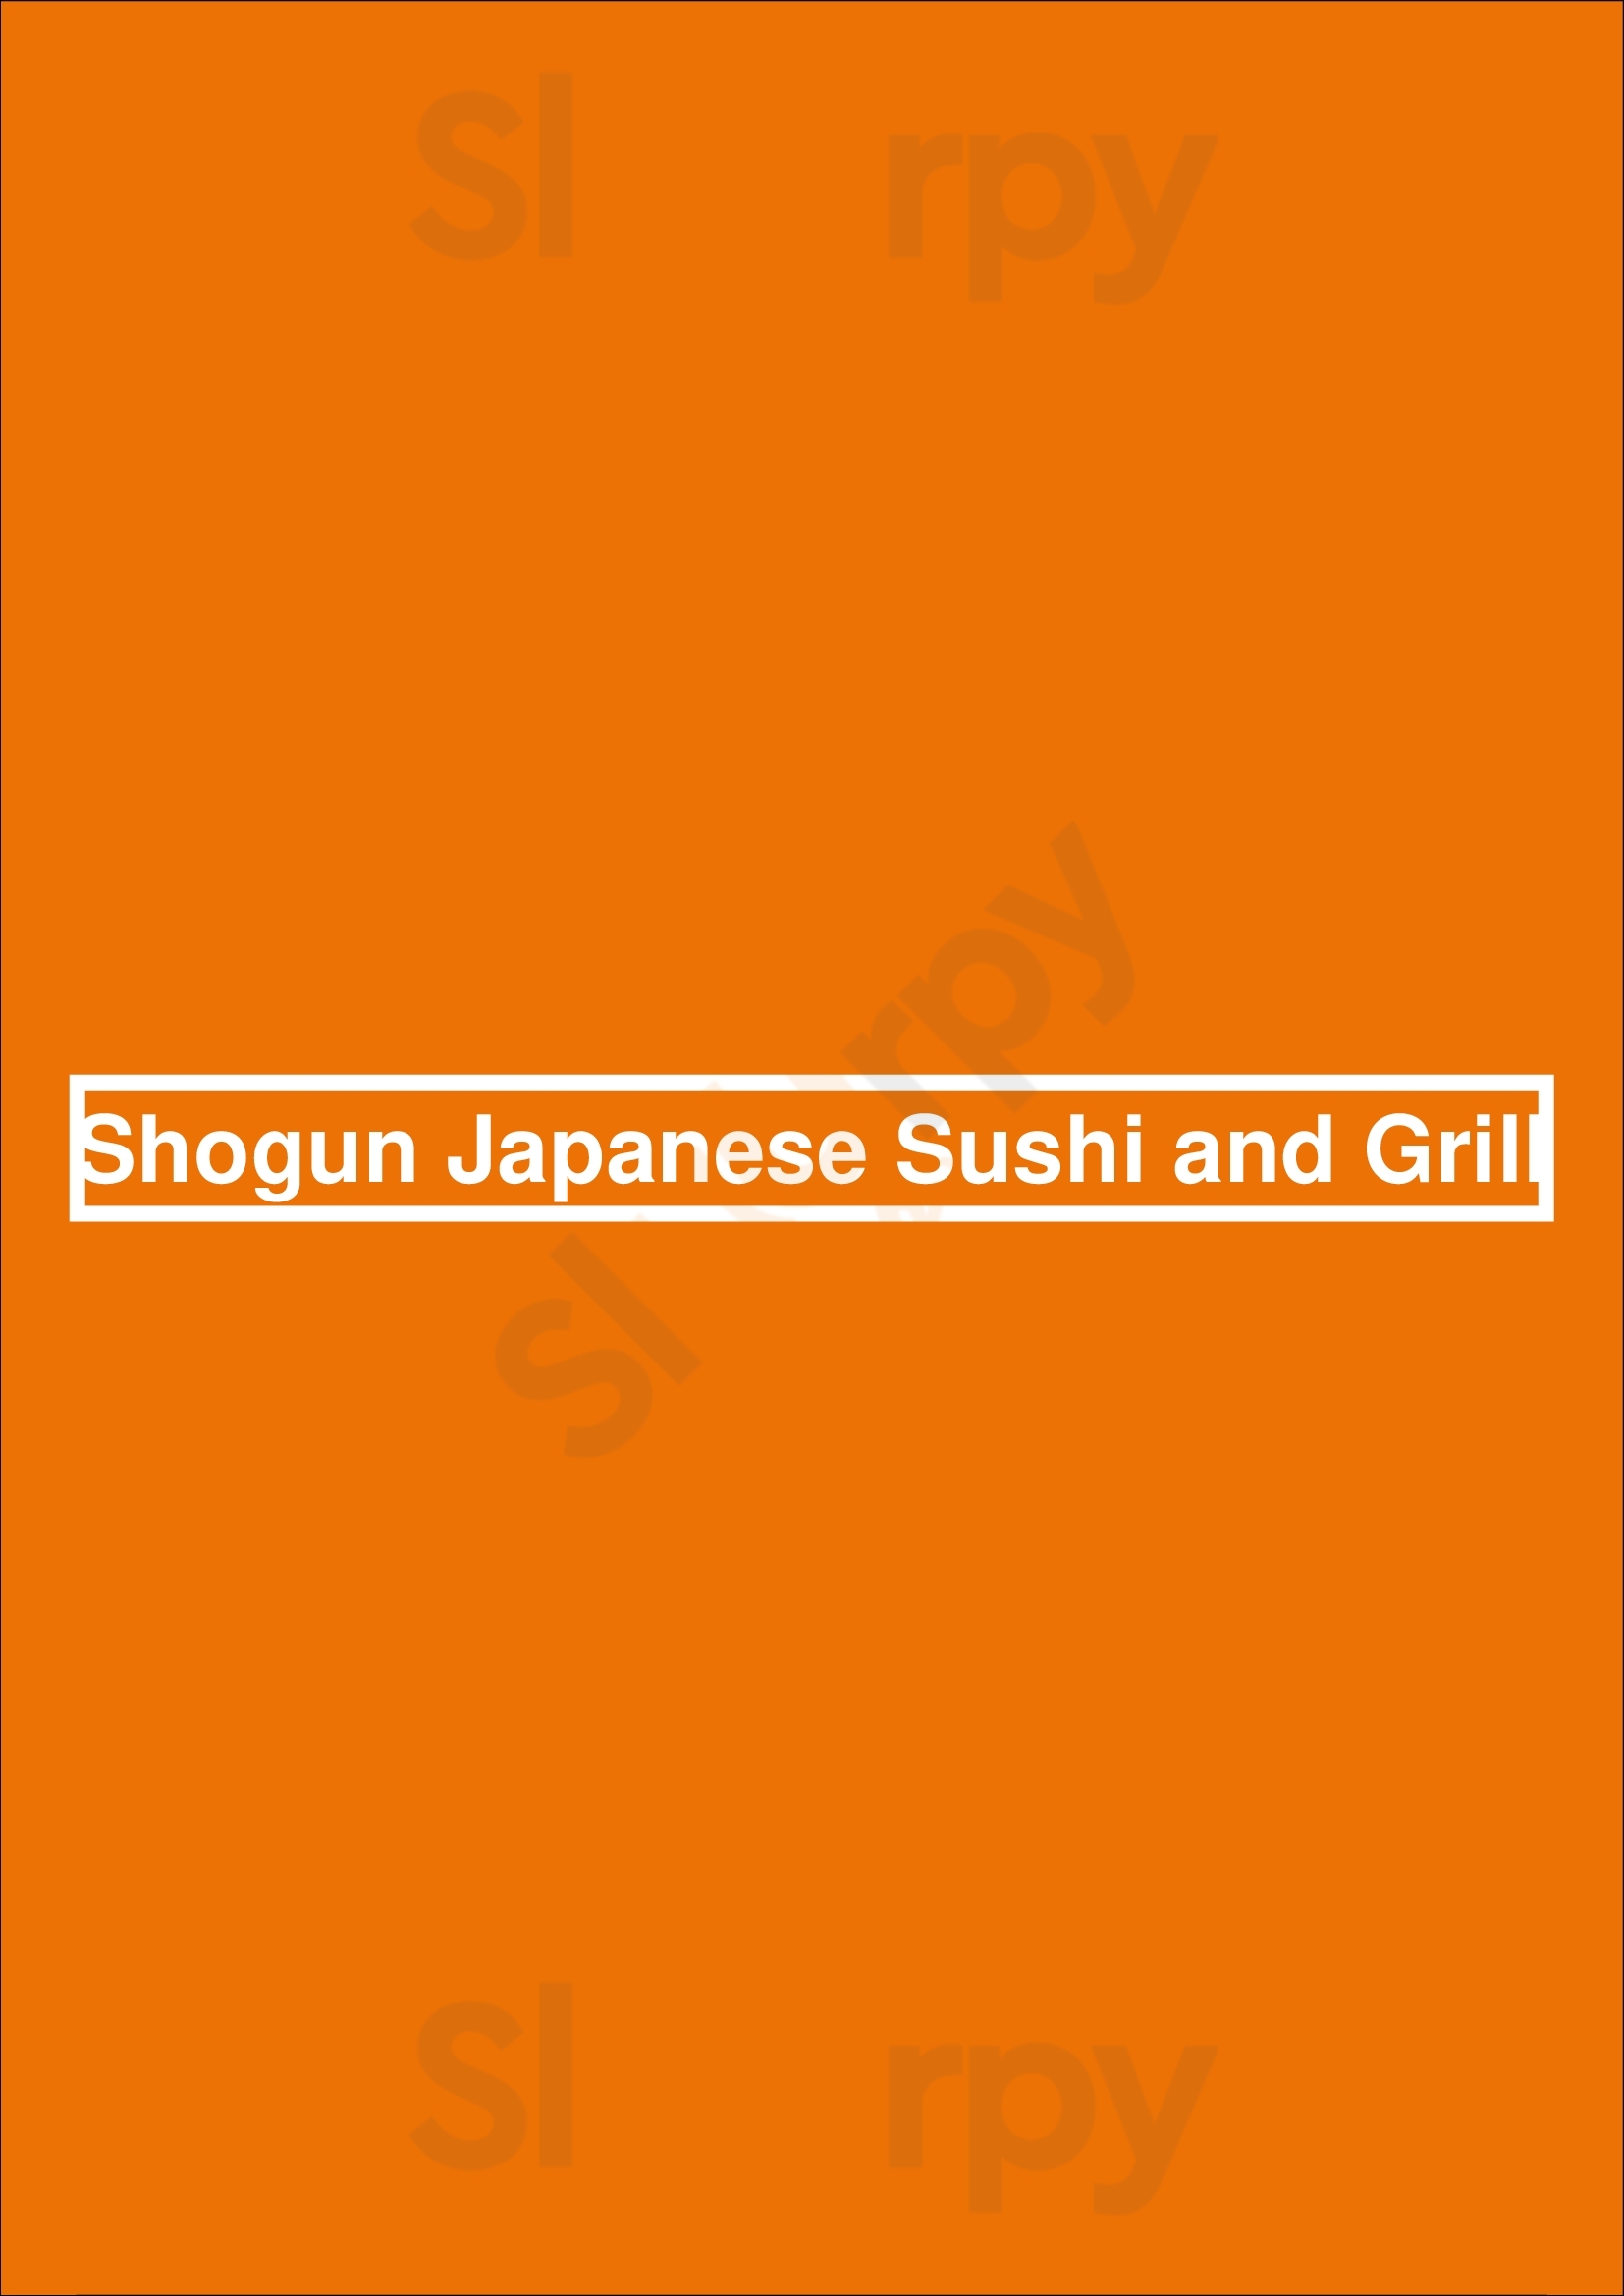 Shogun Japanese Sushi And Grill Oakland Menu - 1